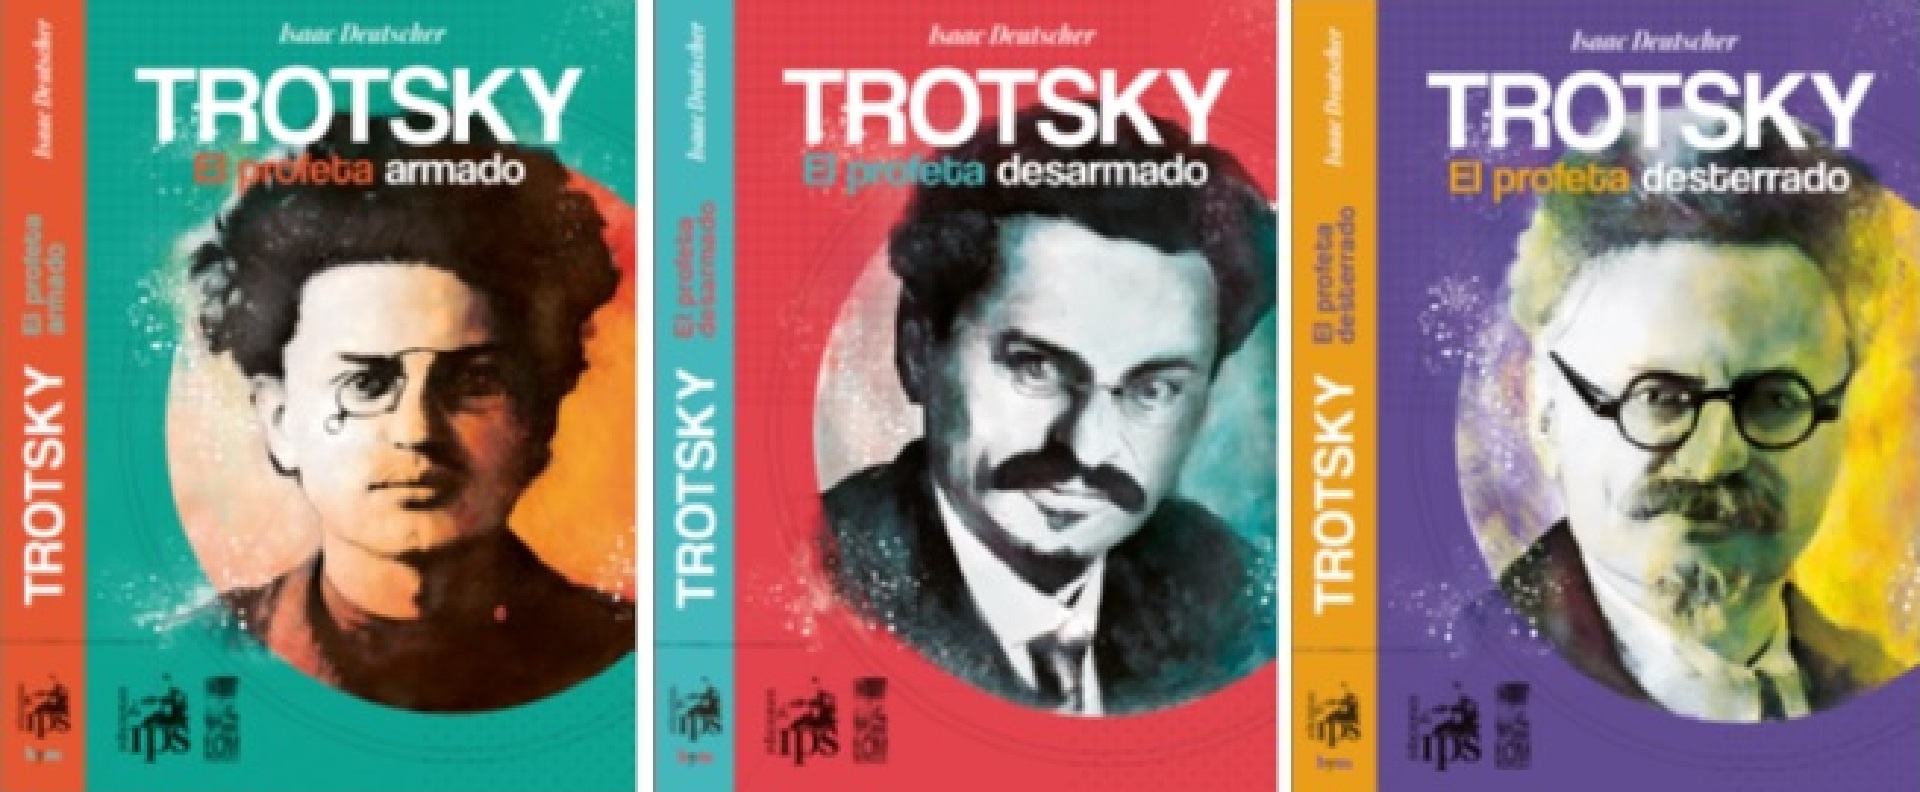 La trilogía biográfica de Trotski, de Isaac Deutscher (Ediciones IPS)